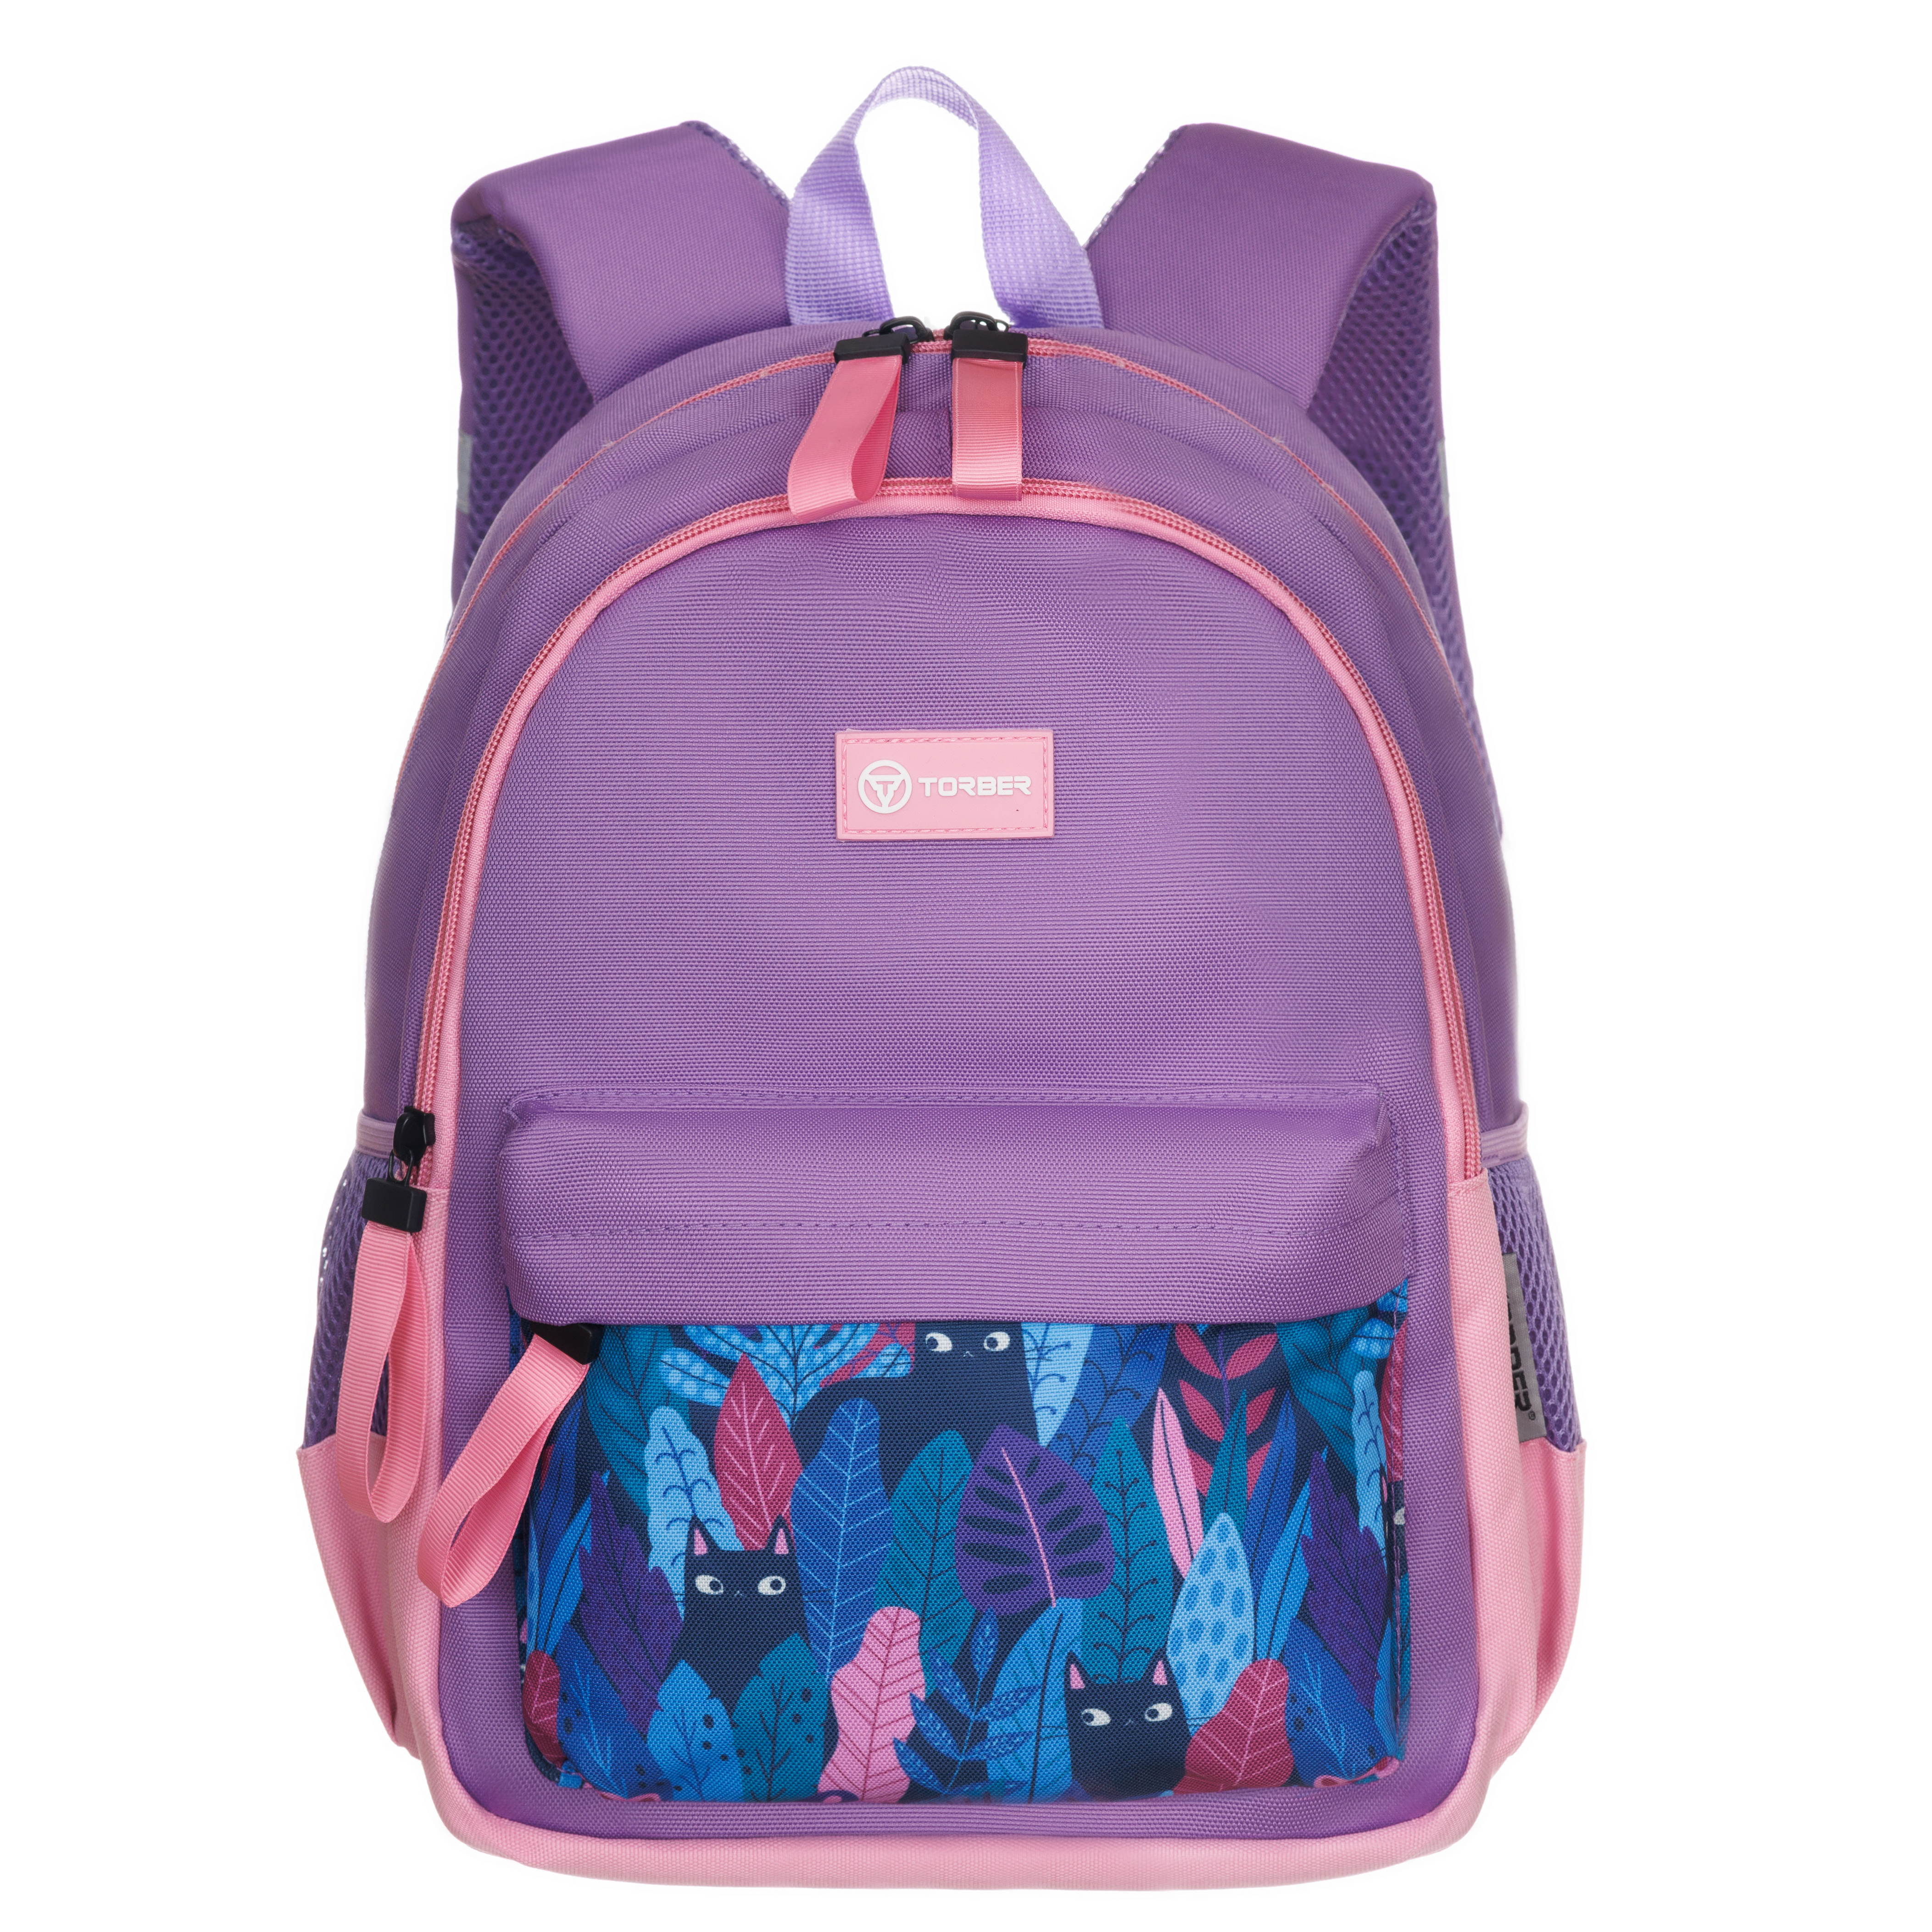 Рюкзак TORBER CLASS X Mini сиреневый розовый с орнаментом и Мешок для сменной обуви - фото 4